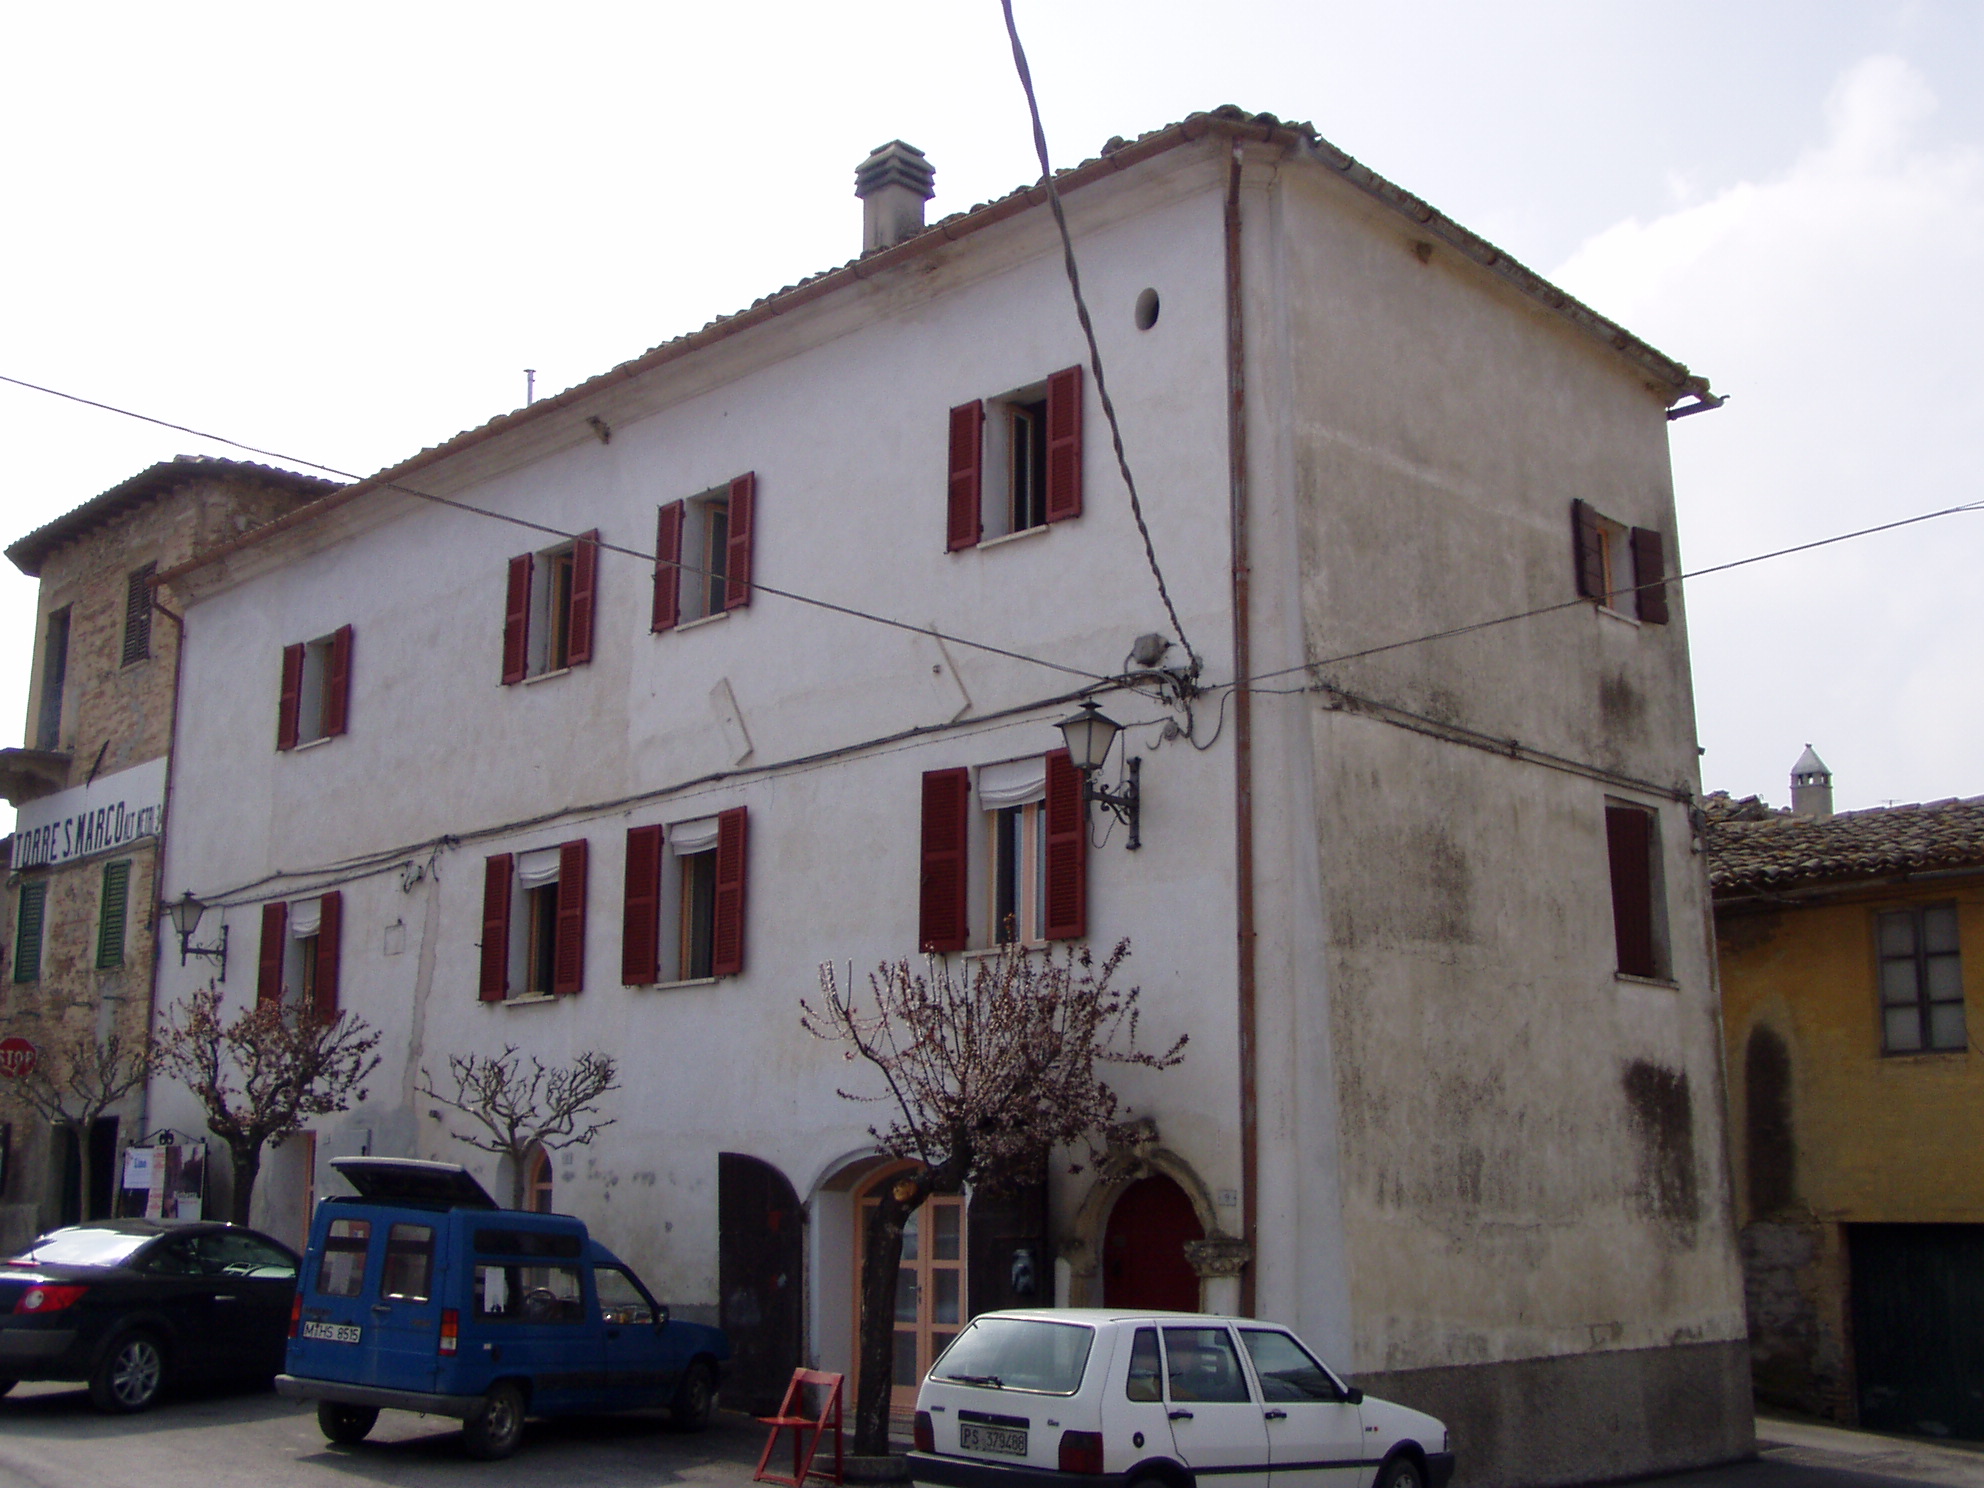 Palazzo Patrignani (palazzo, nobiliare) - Fratte Rosa (PU) 